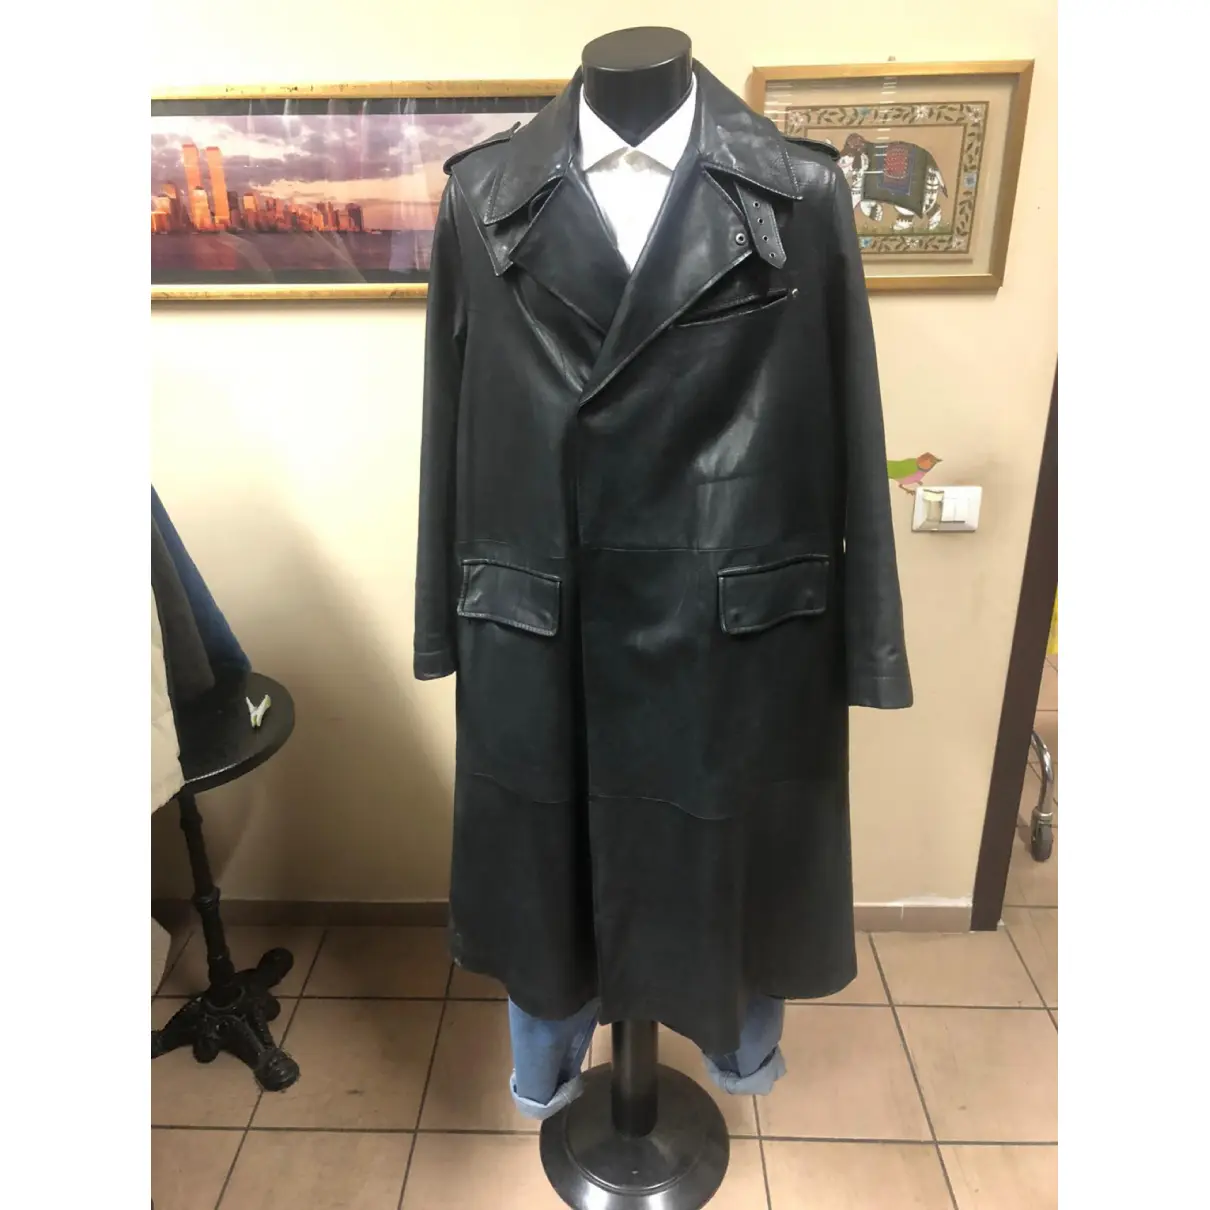 Leather coat Yves Saint Laurent - Vintage